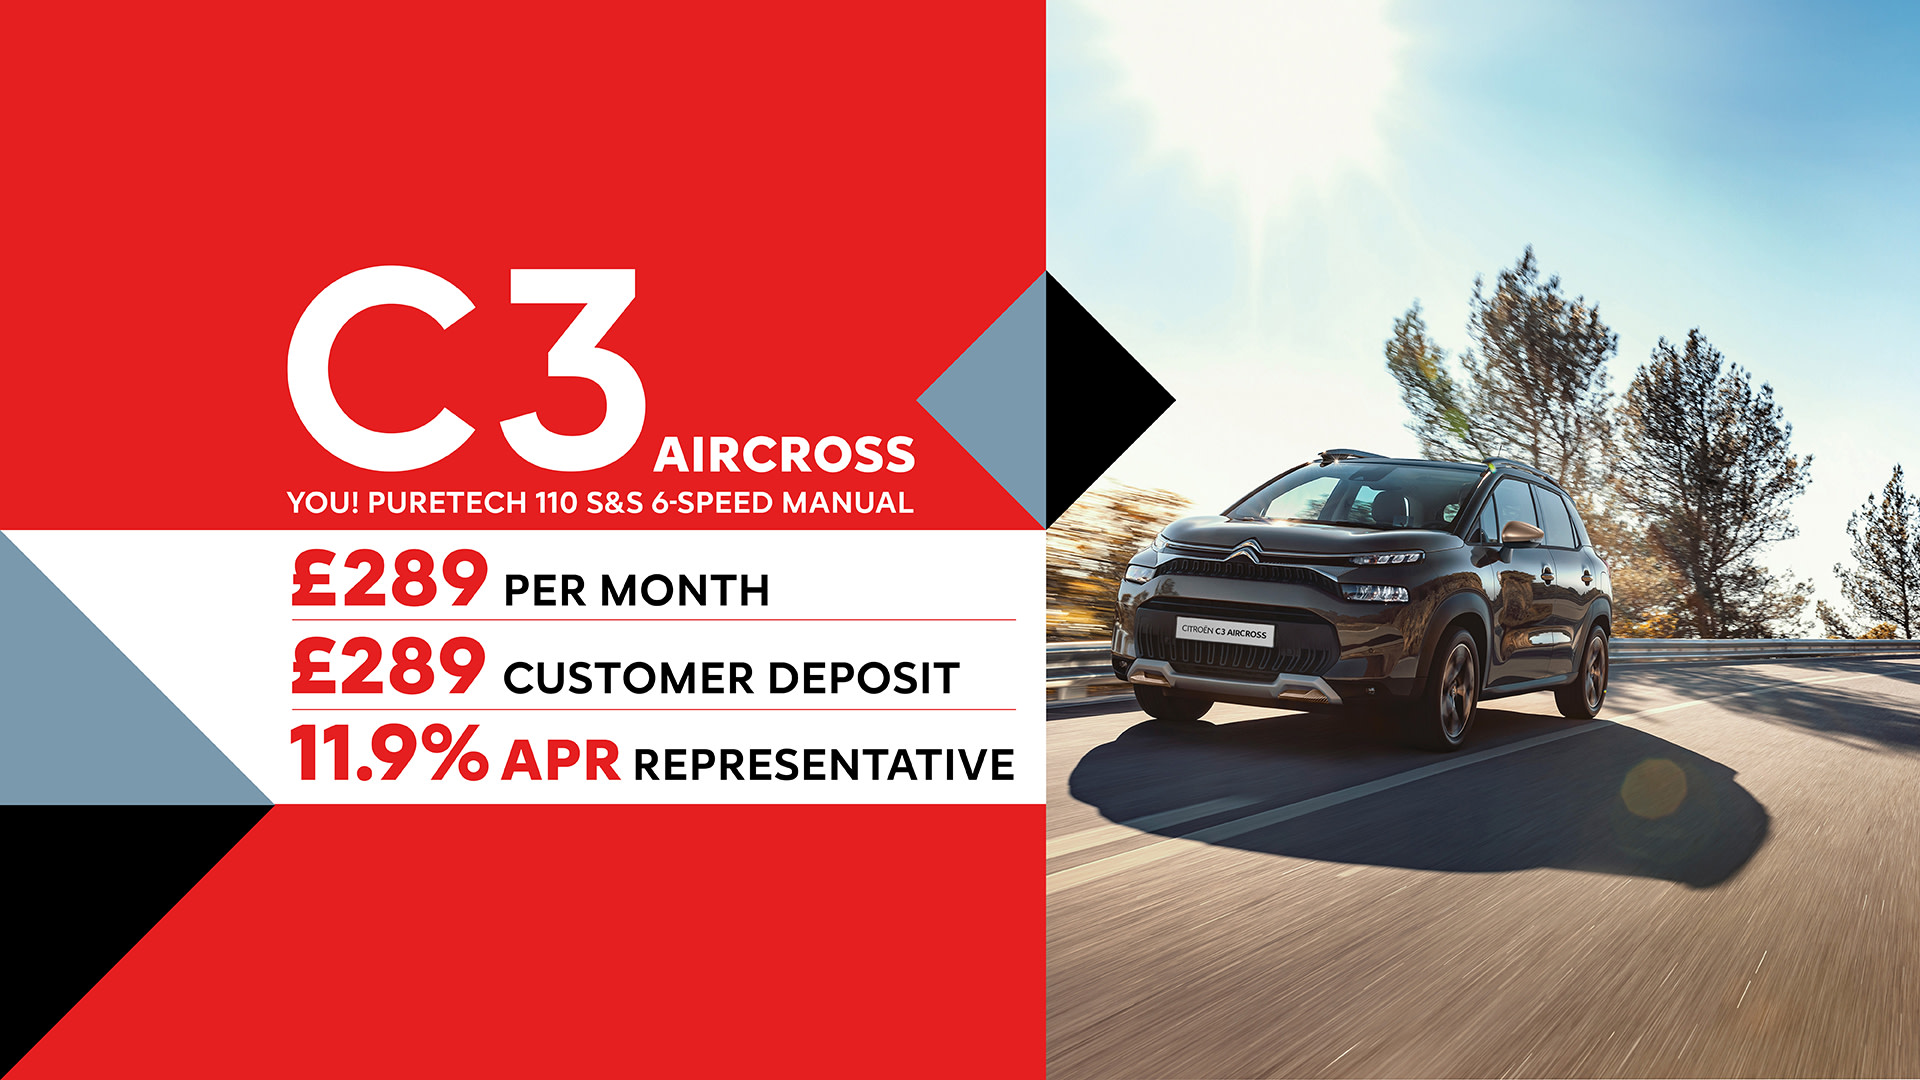 C3 Aircross Finance Offer